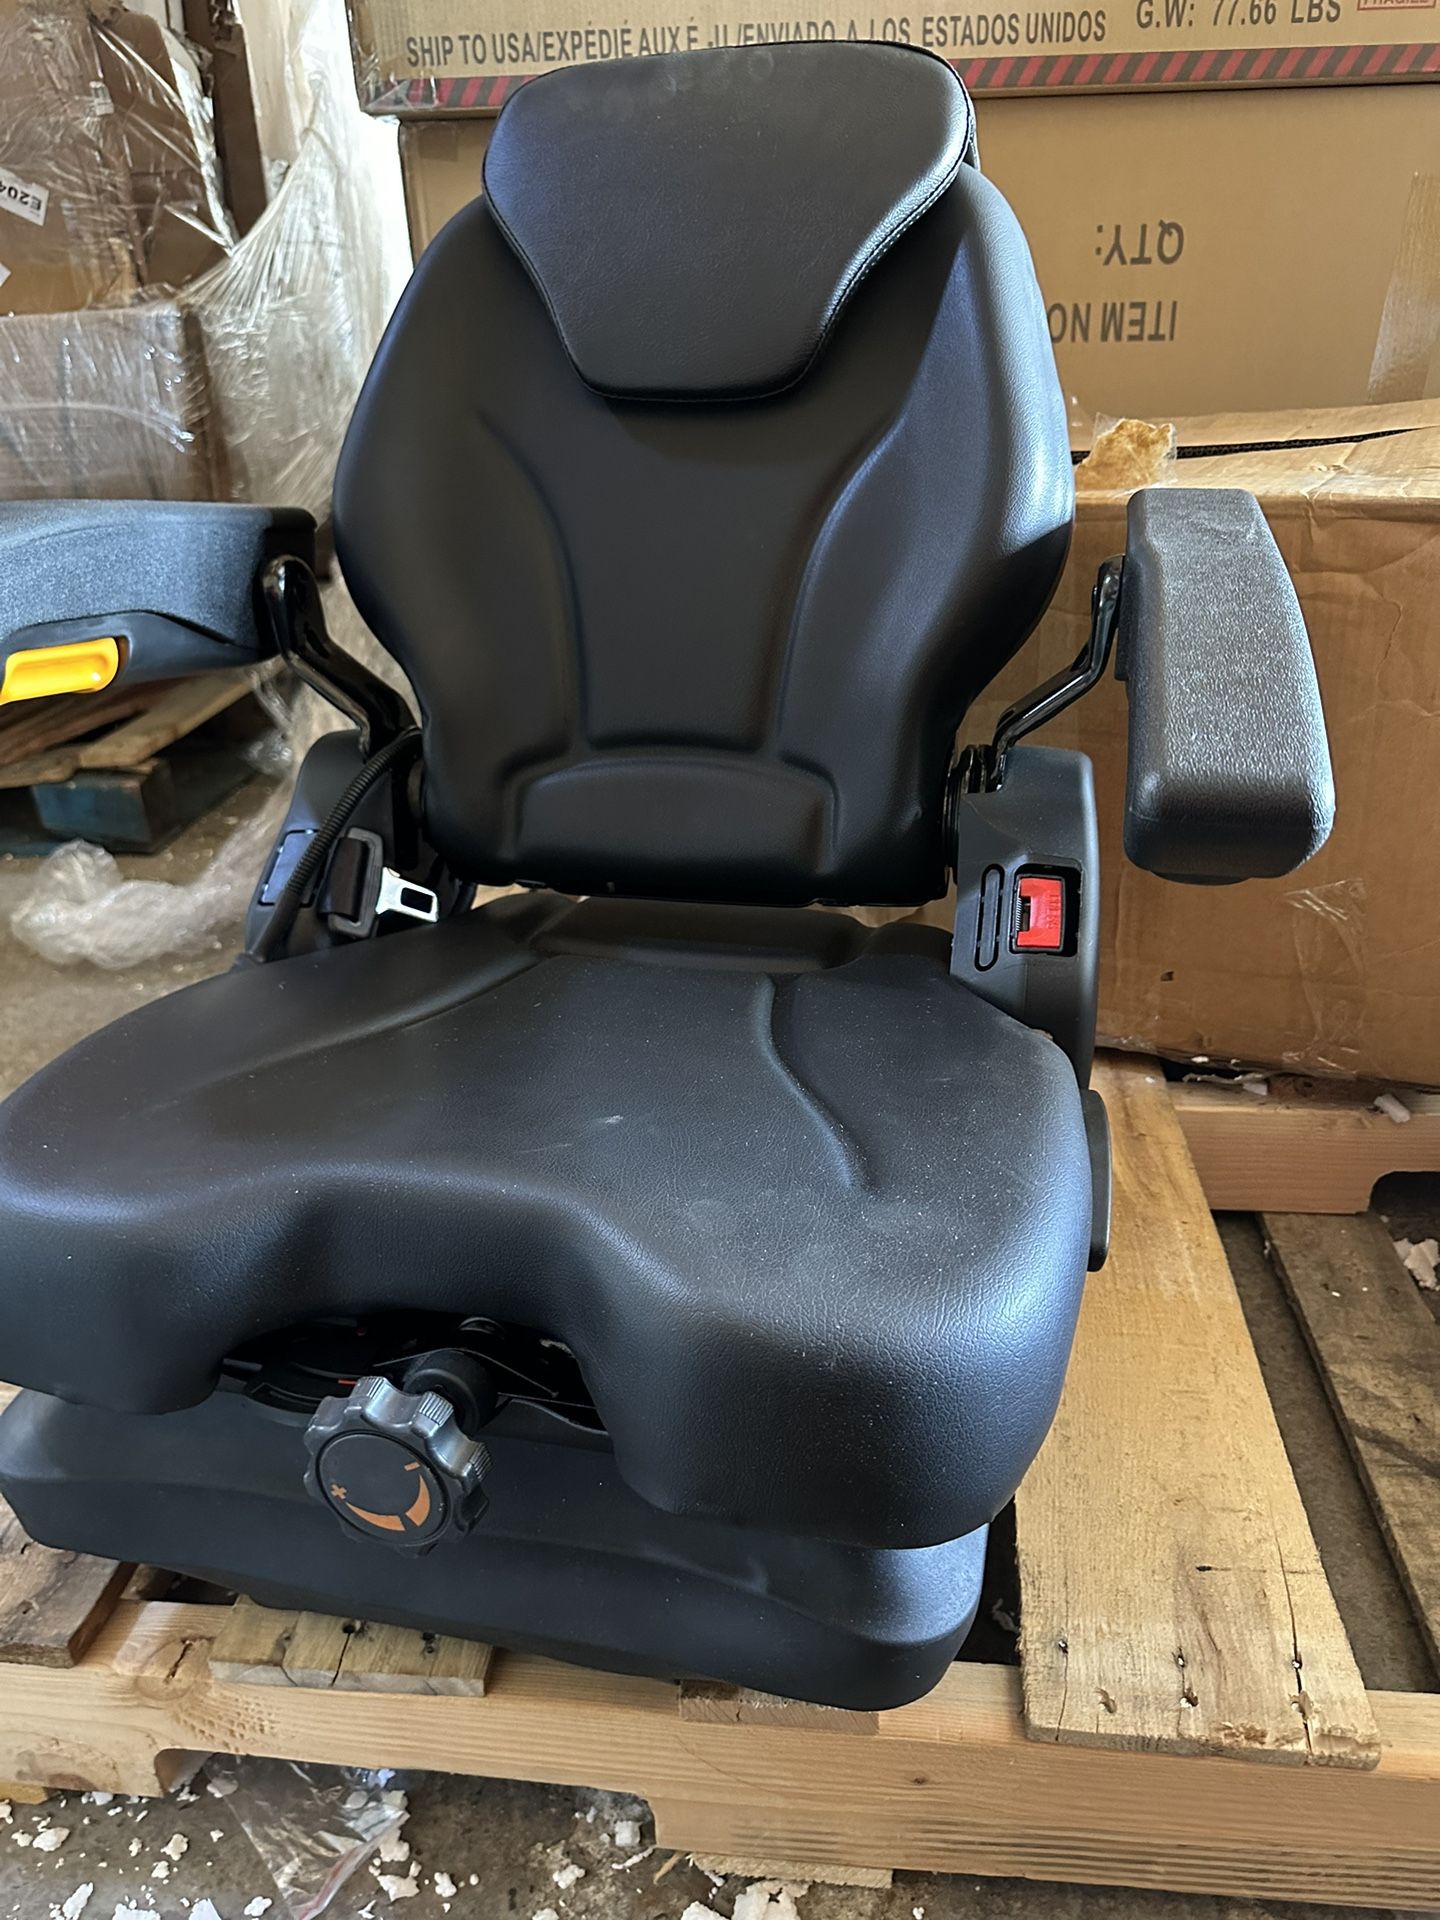 Universal Tractor Suspension Seat with Adjustable Angle Back,Armrest And Safety Belt,for Linde Forklift Tractor,Excavator Skid Loader Backhoe Dozer Te